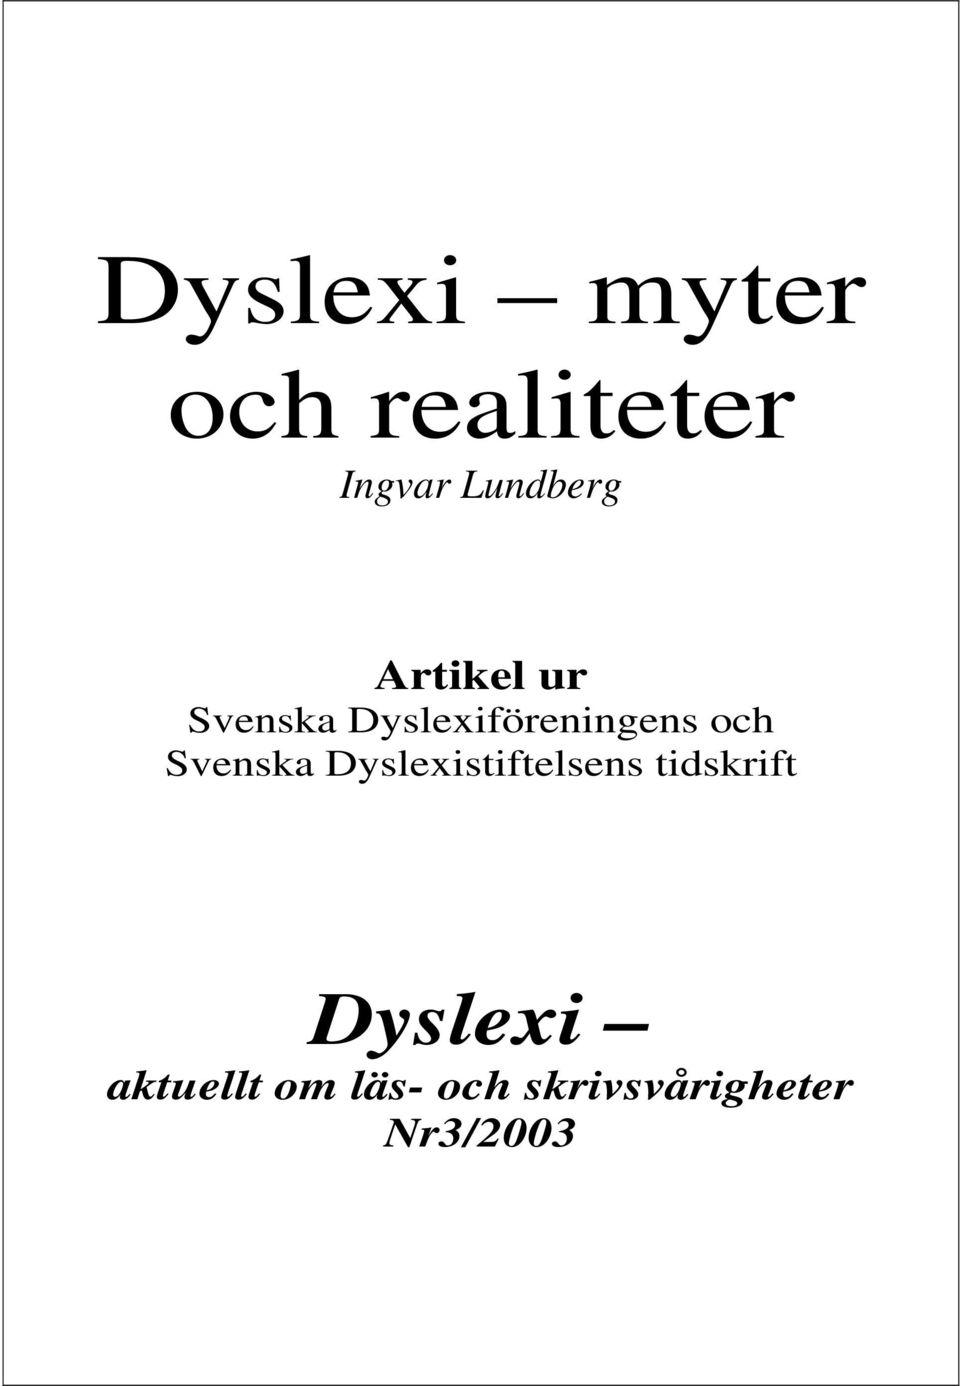 Svenska Dyslexistiftelsens tidskrift Dyslexi